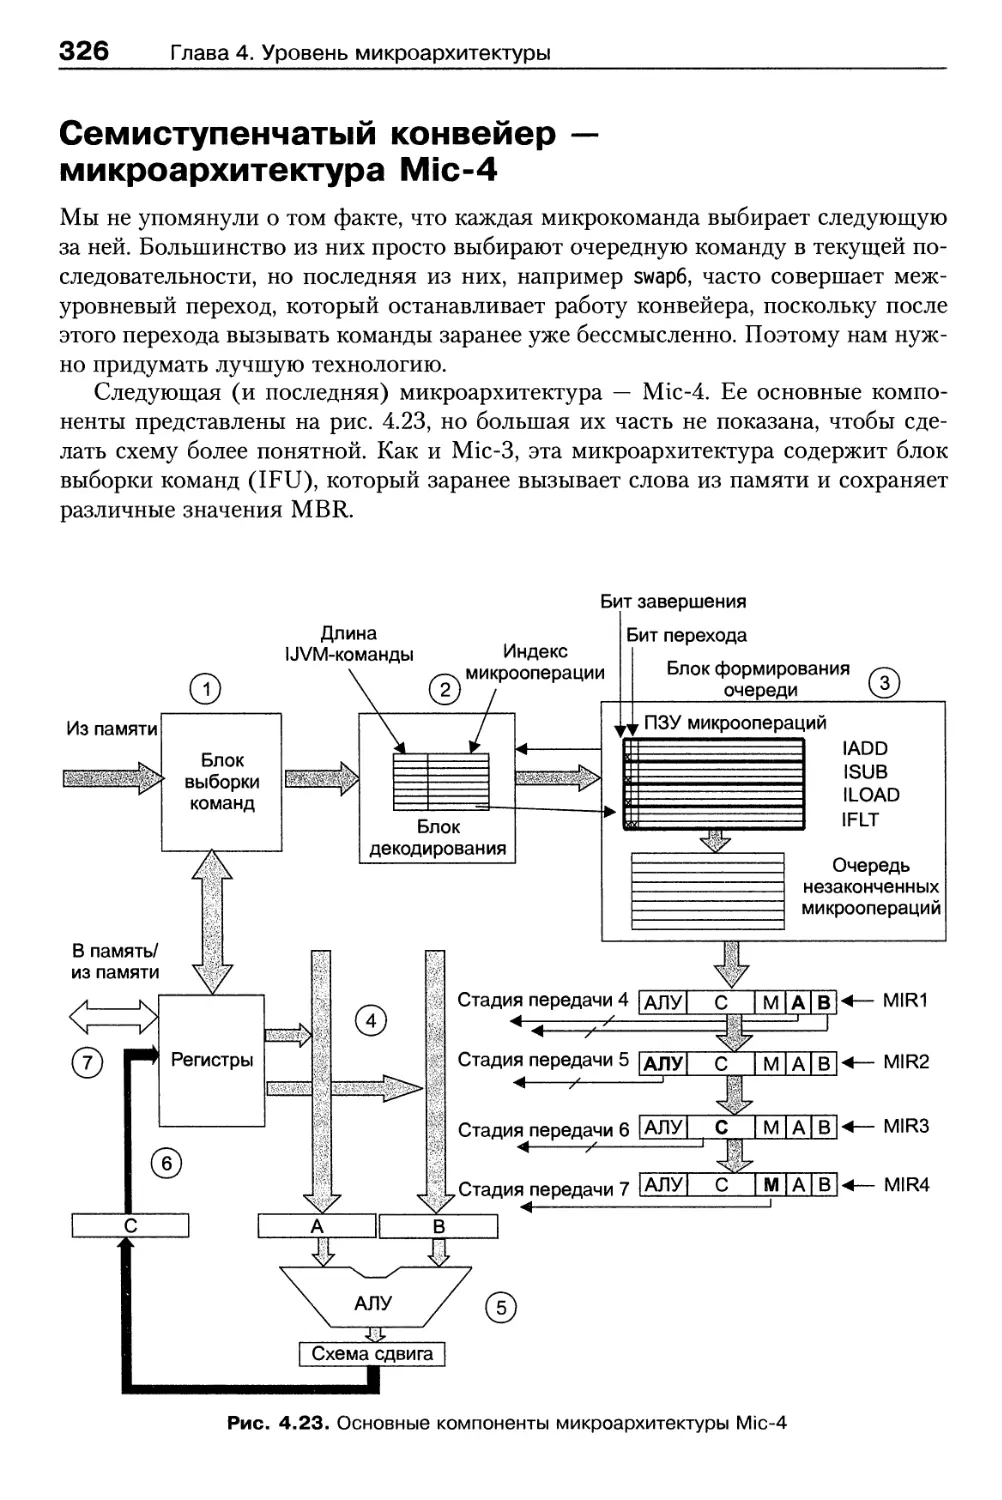 Семиступенчатый конвейер — микроархитектура Mic-4